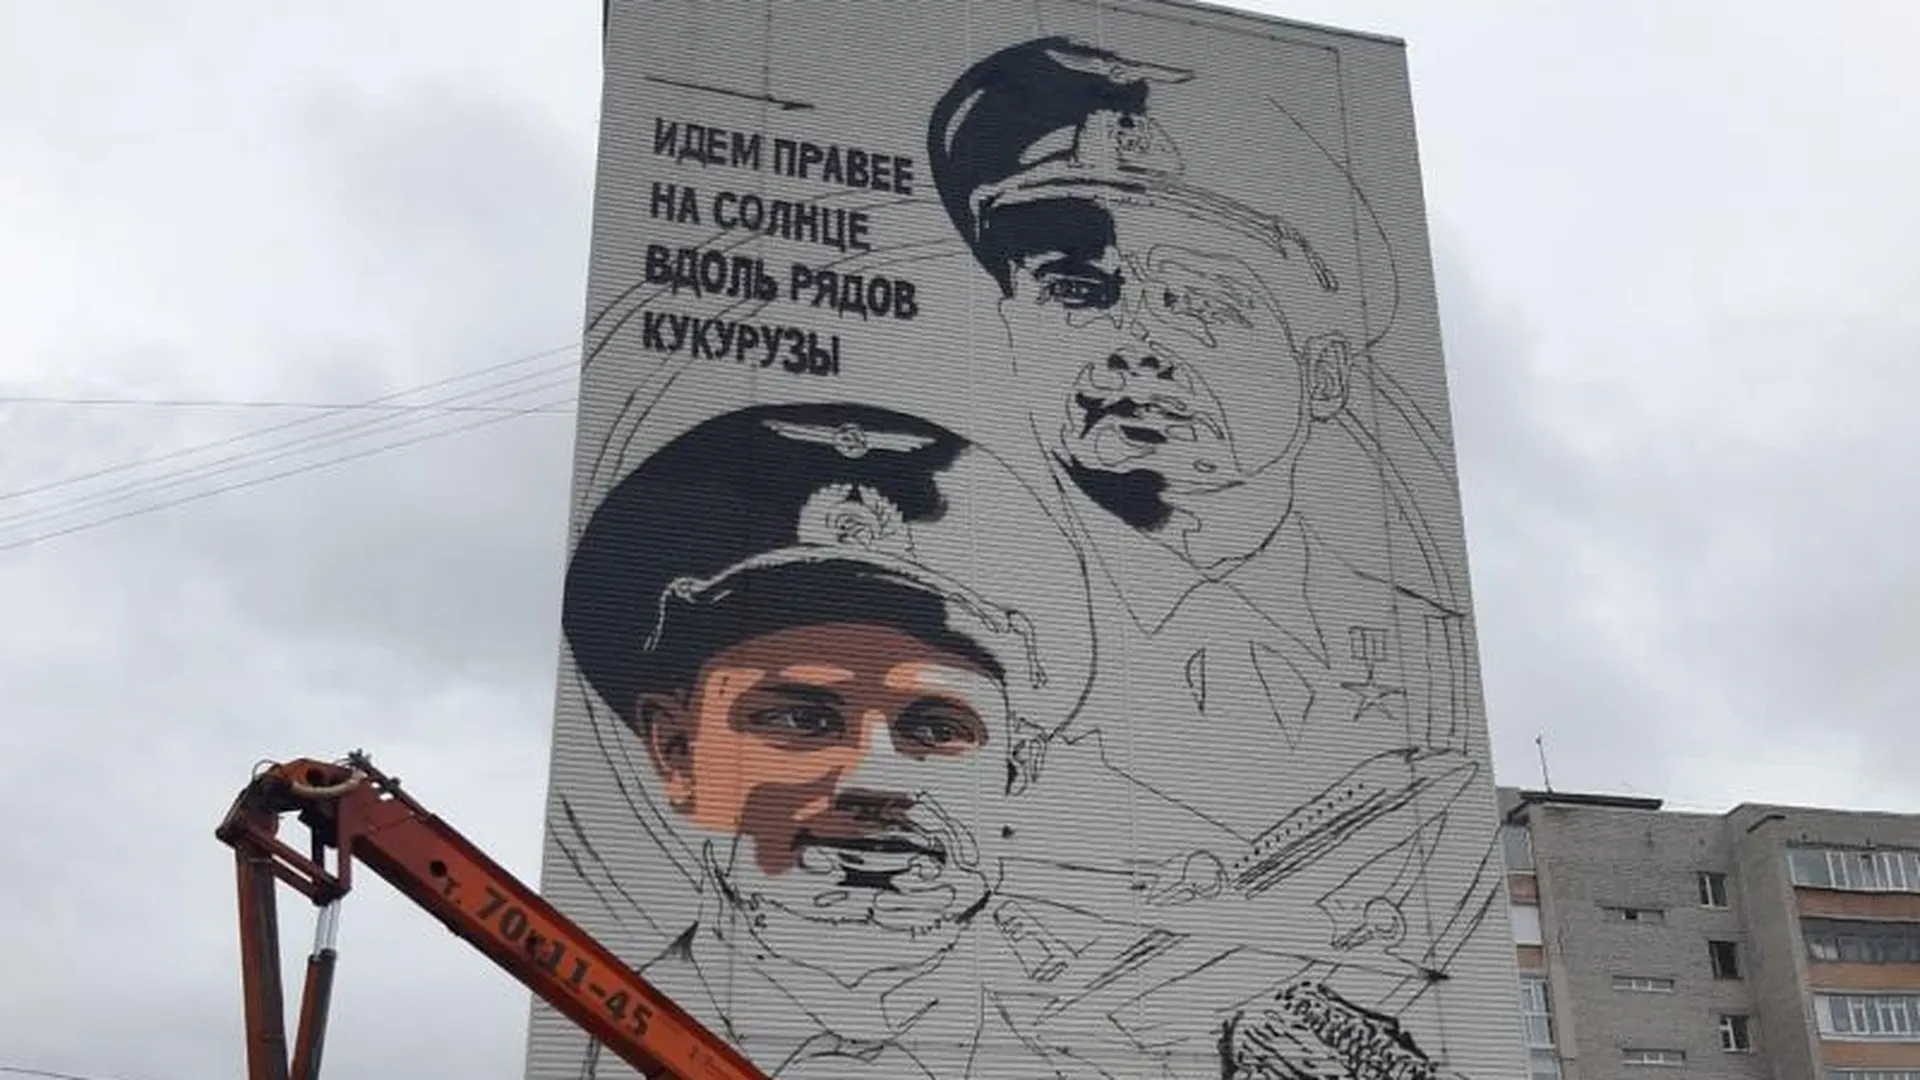 Граффити с пилотами, посадившими самолет в кукурузном поле, появится в Сургуте